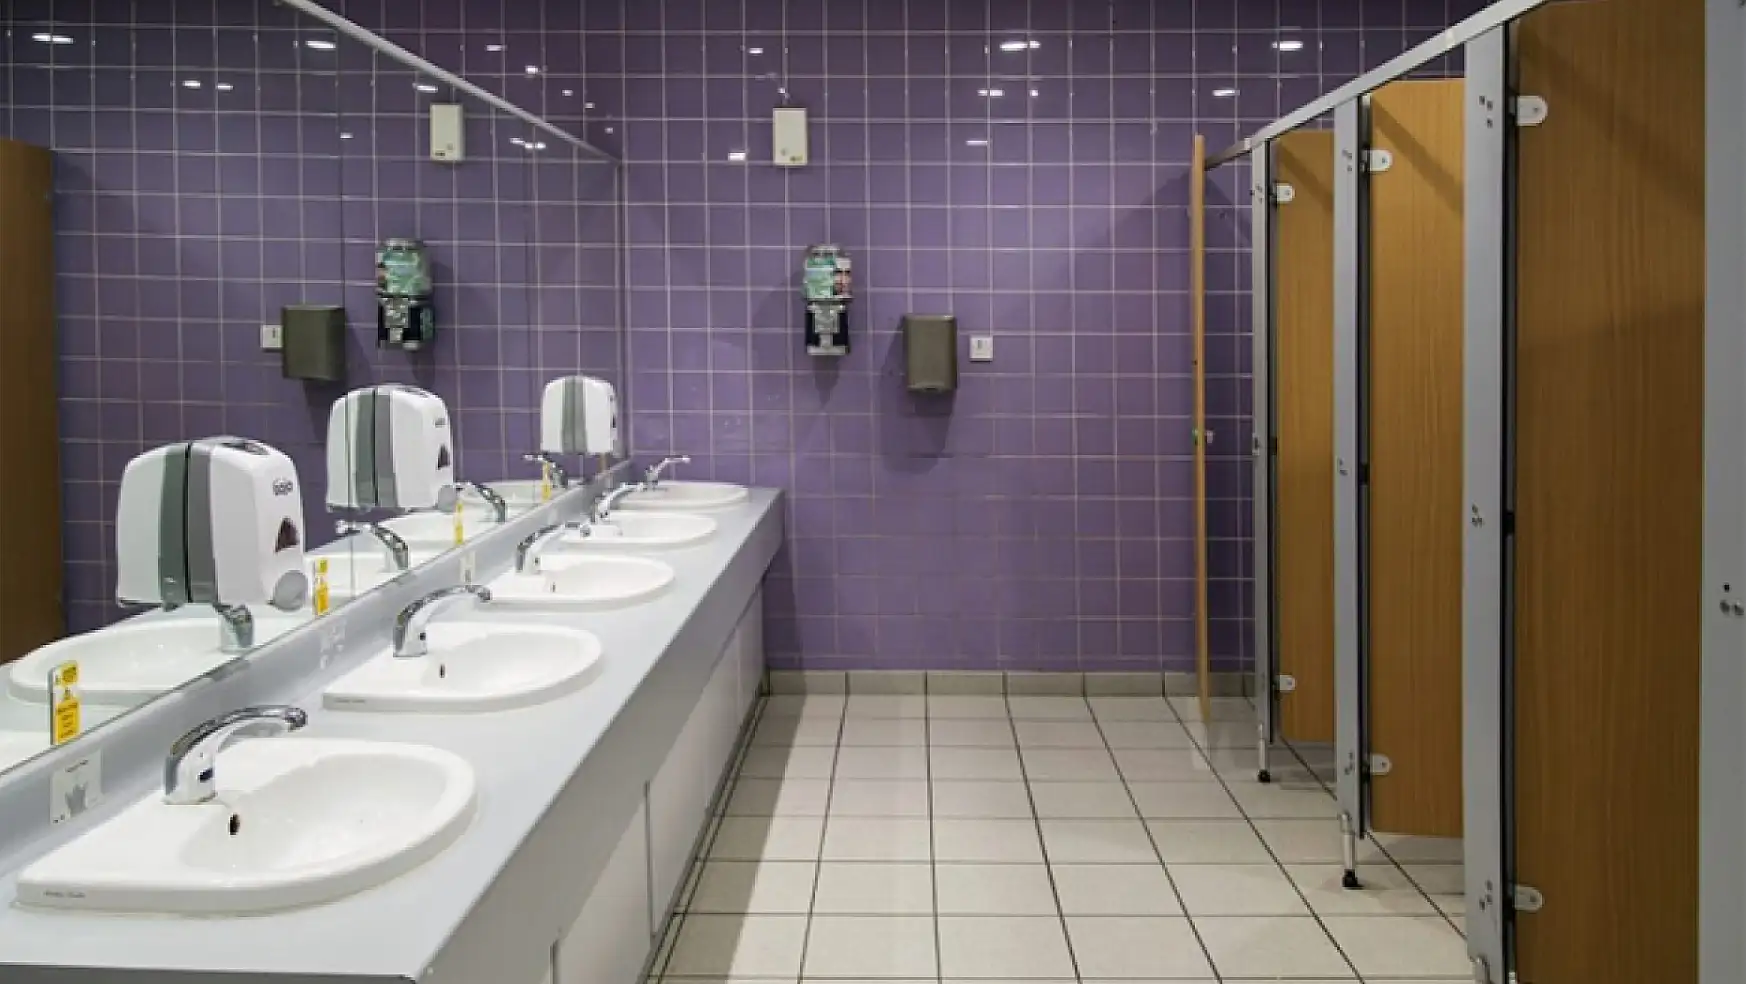 Şehir merkezindeki umumi tuvalet sorunu vatandaşları mağdur ediyor